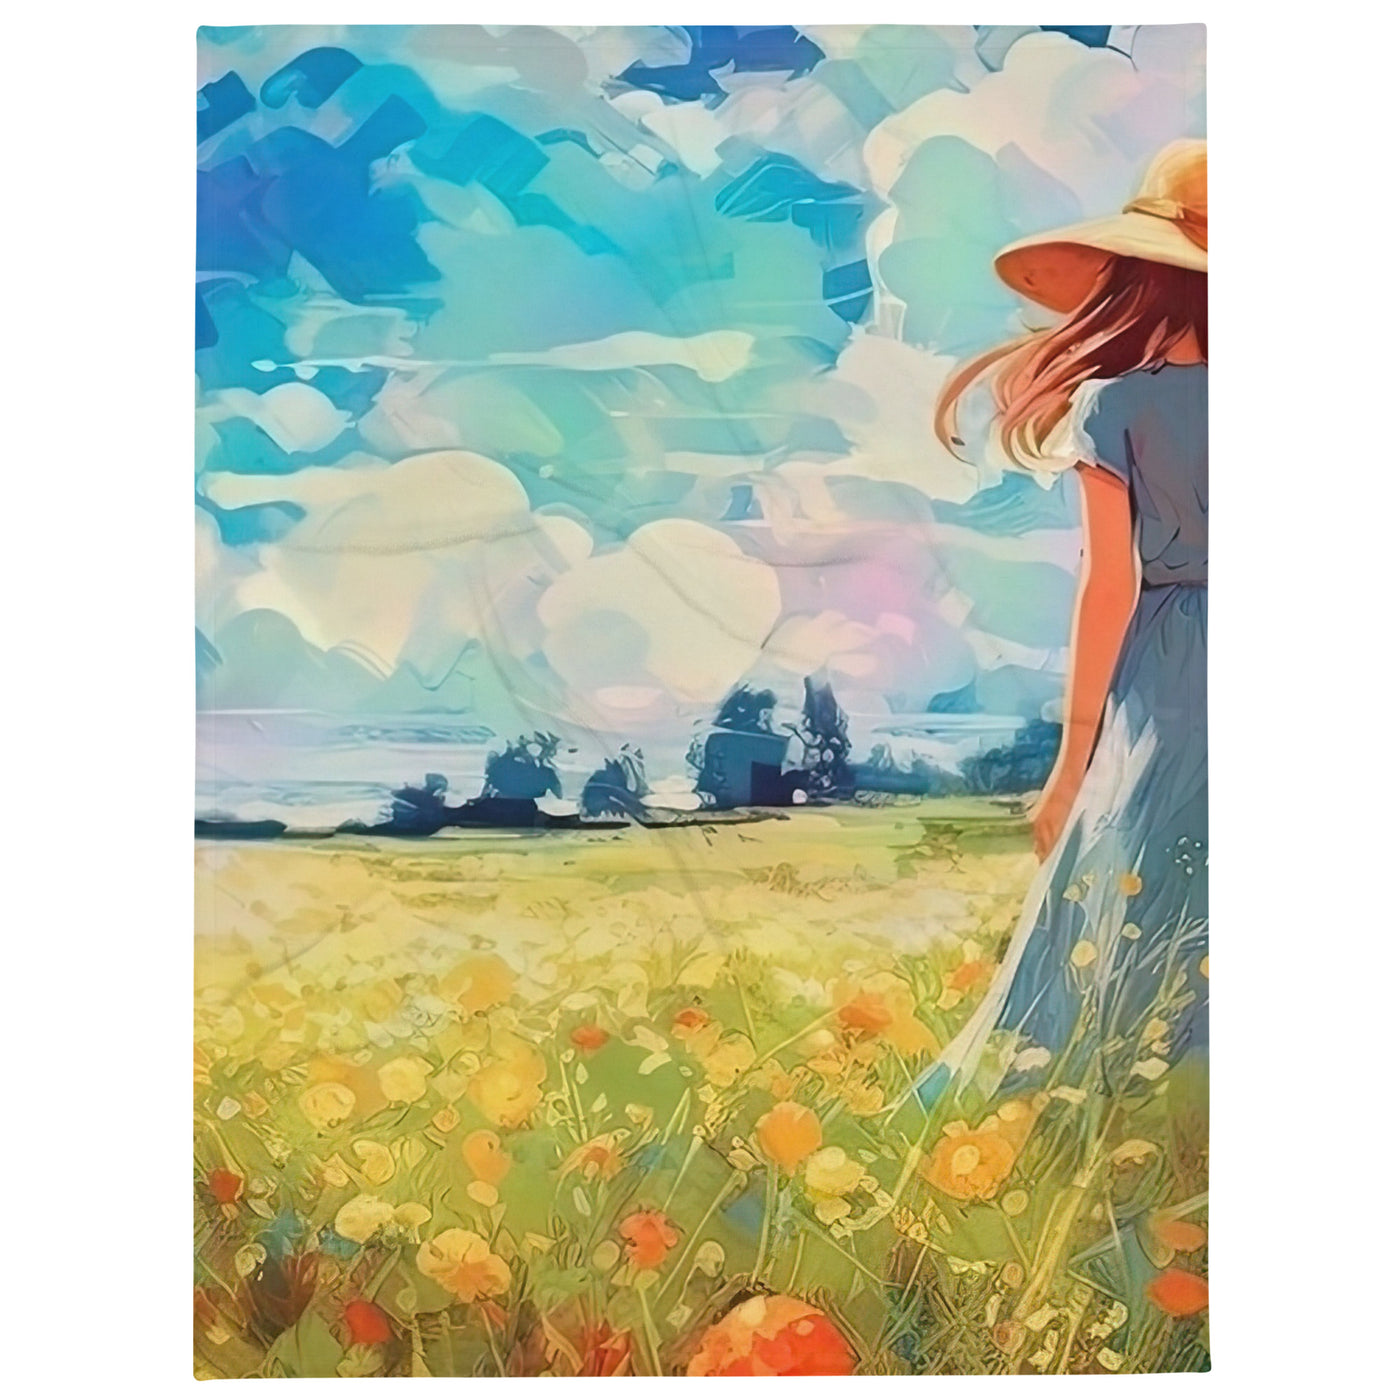 Dame mit Hut im Feld mit Blumen - Landschaftsmalerei - Überwurfdecke camping xxx 152.4 x 203.2 cm